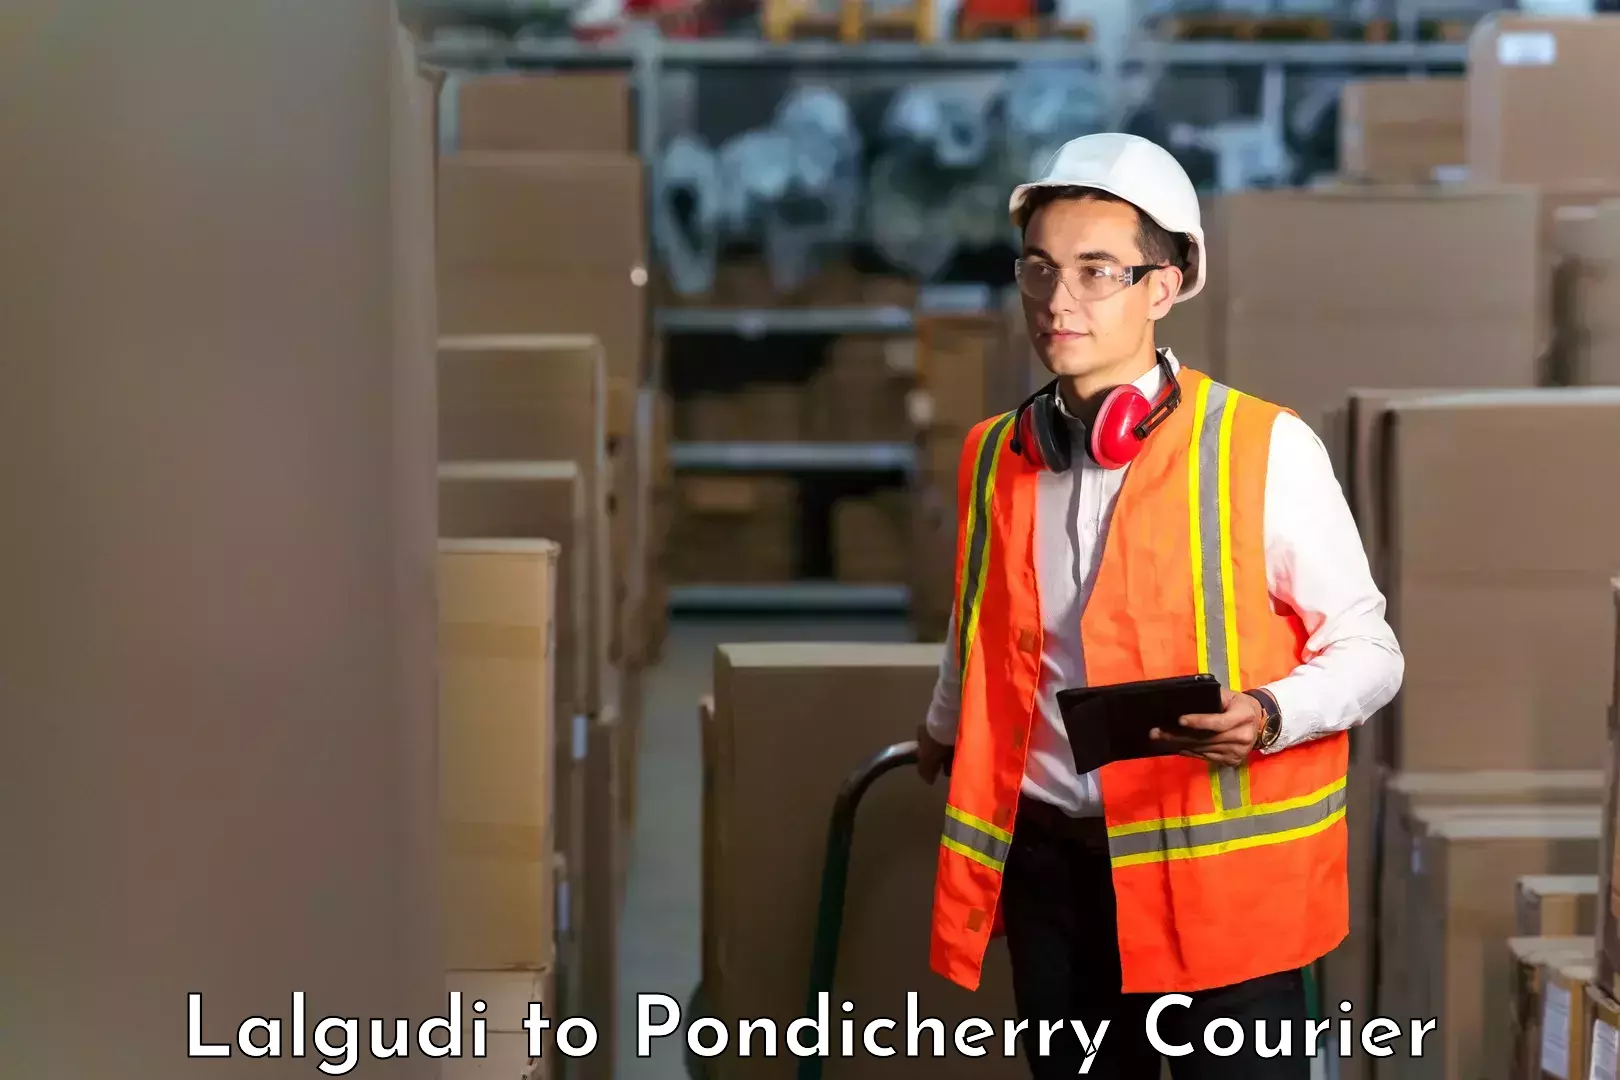 Reliable courier service Lalgudi to Pondicherry